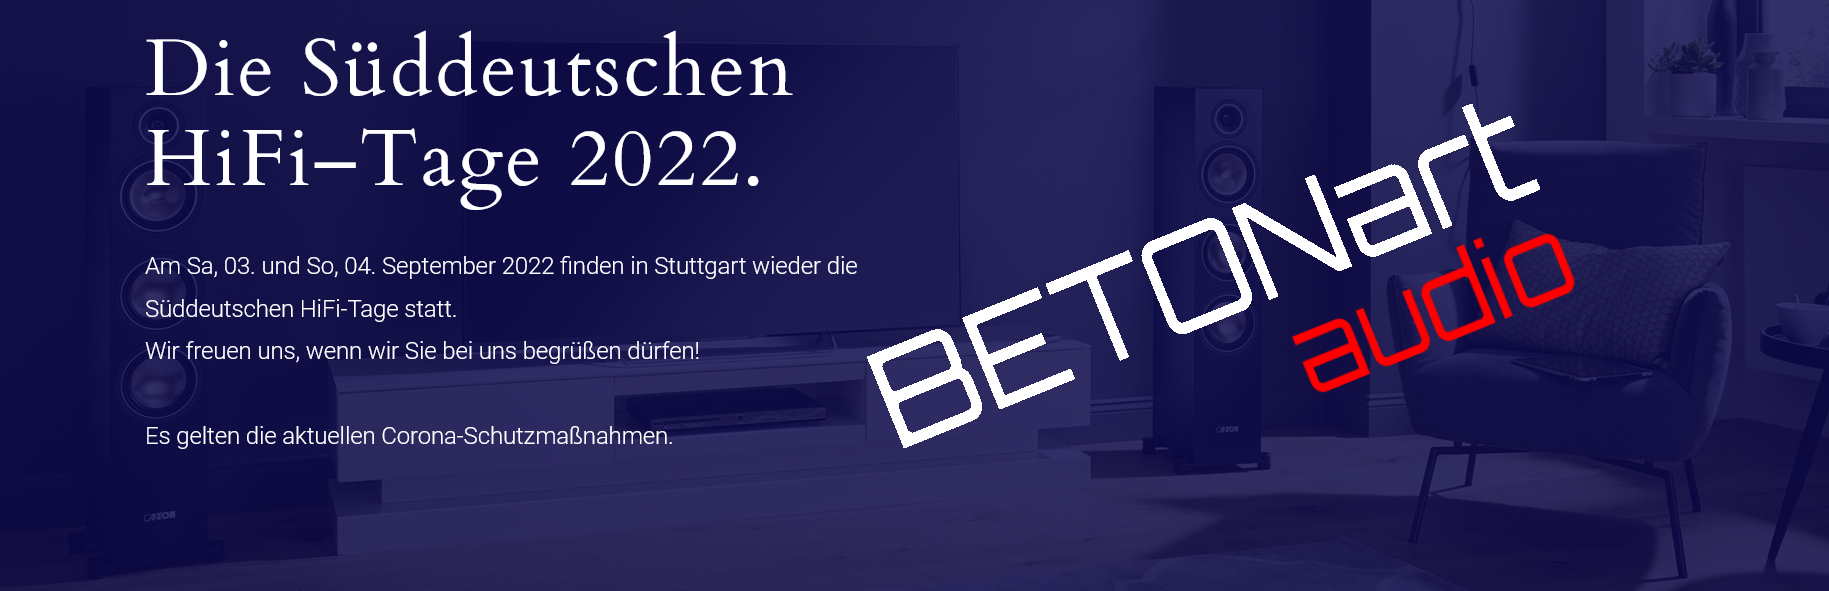 Süddeutsche HiFi-Tage 2022 5